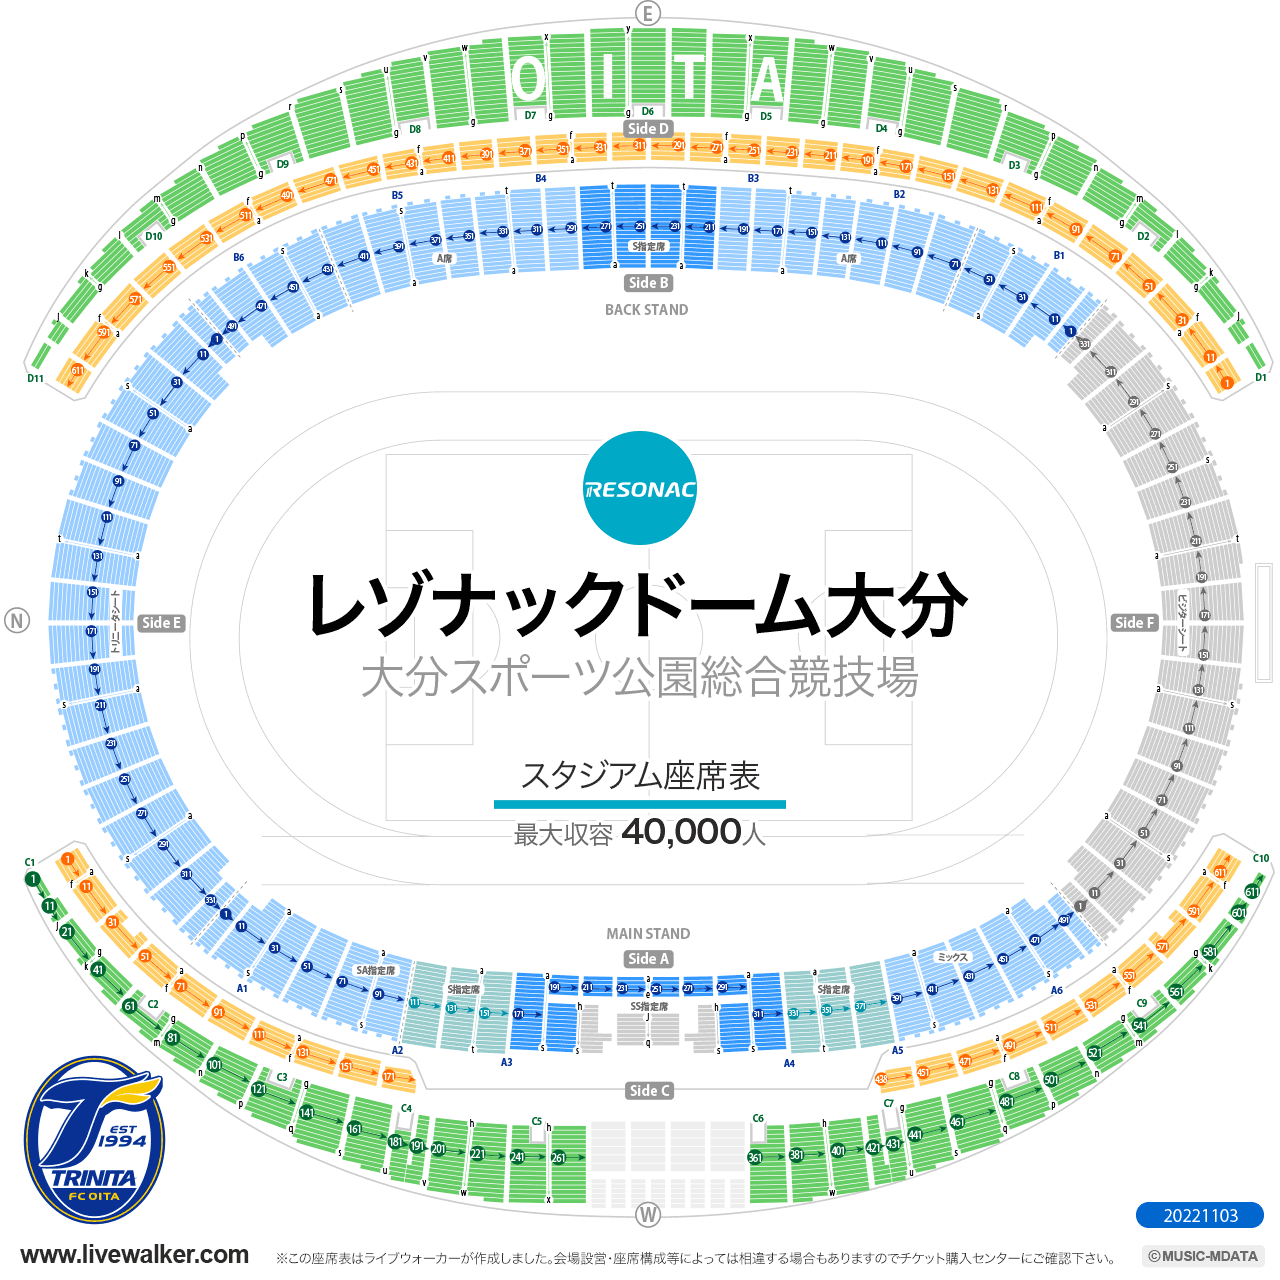 昭和電工ドーム大分スタジアムの座席表